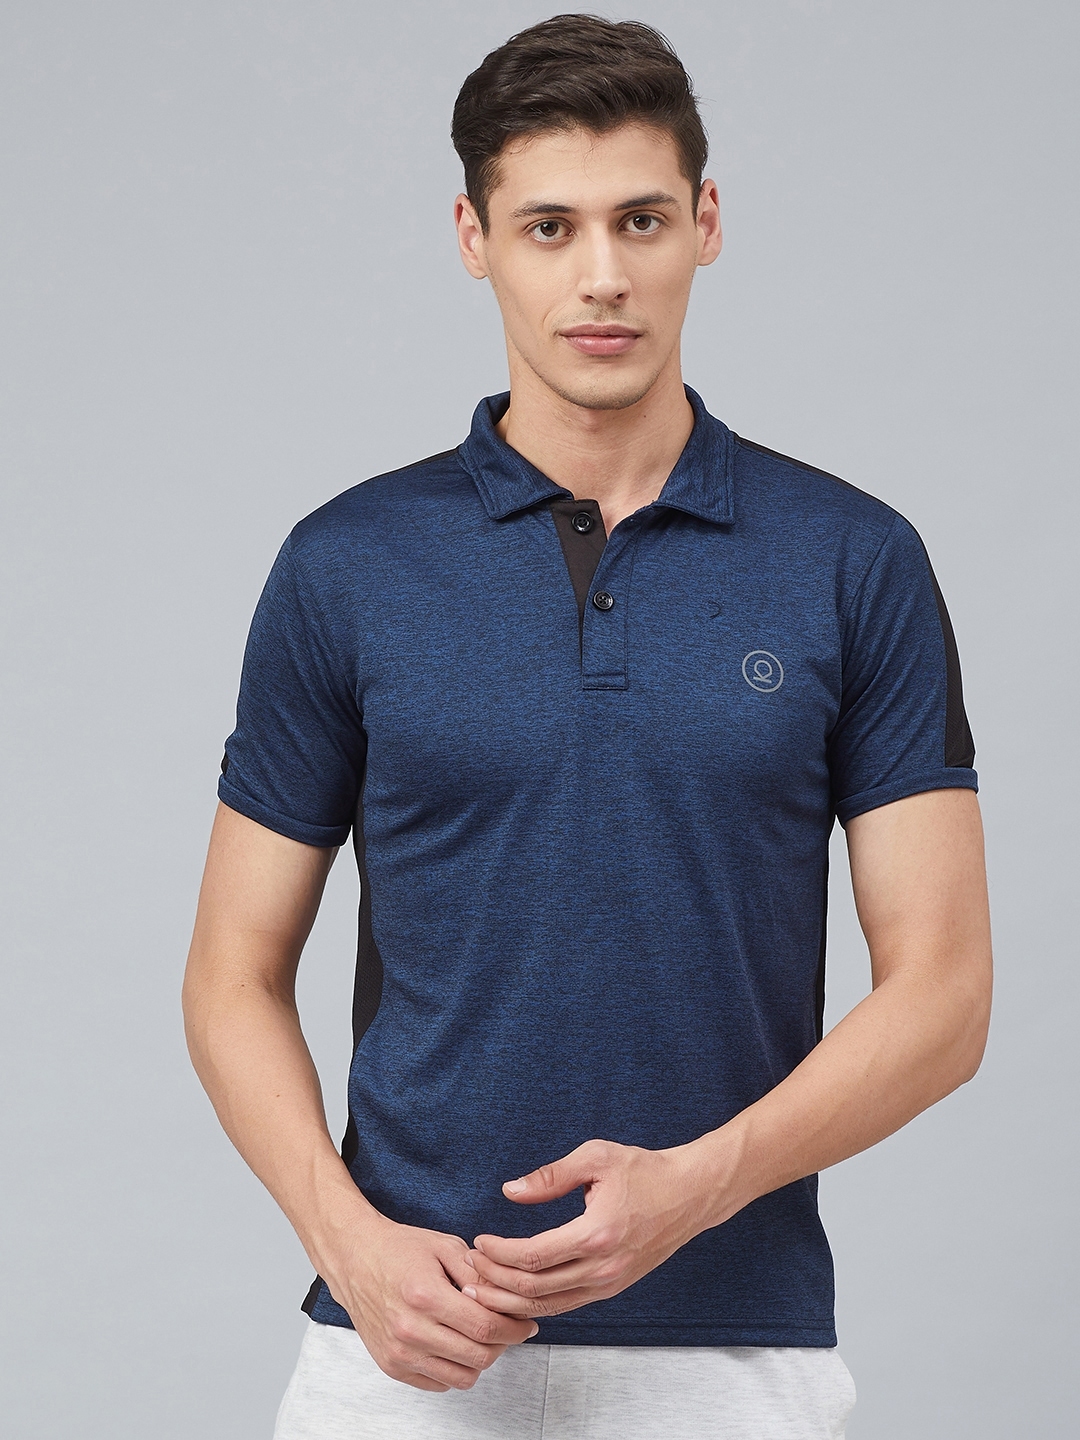 Buy CHKOKKO Men Navy Blue Solid Polo Collar Training T Shirt - Tshirts ...